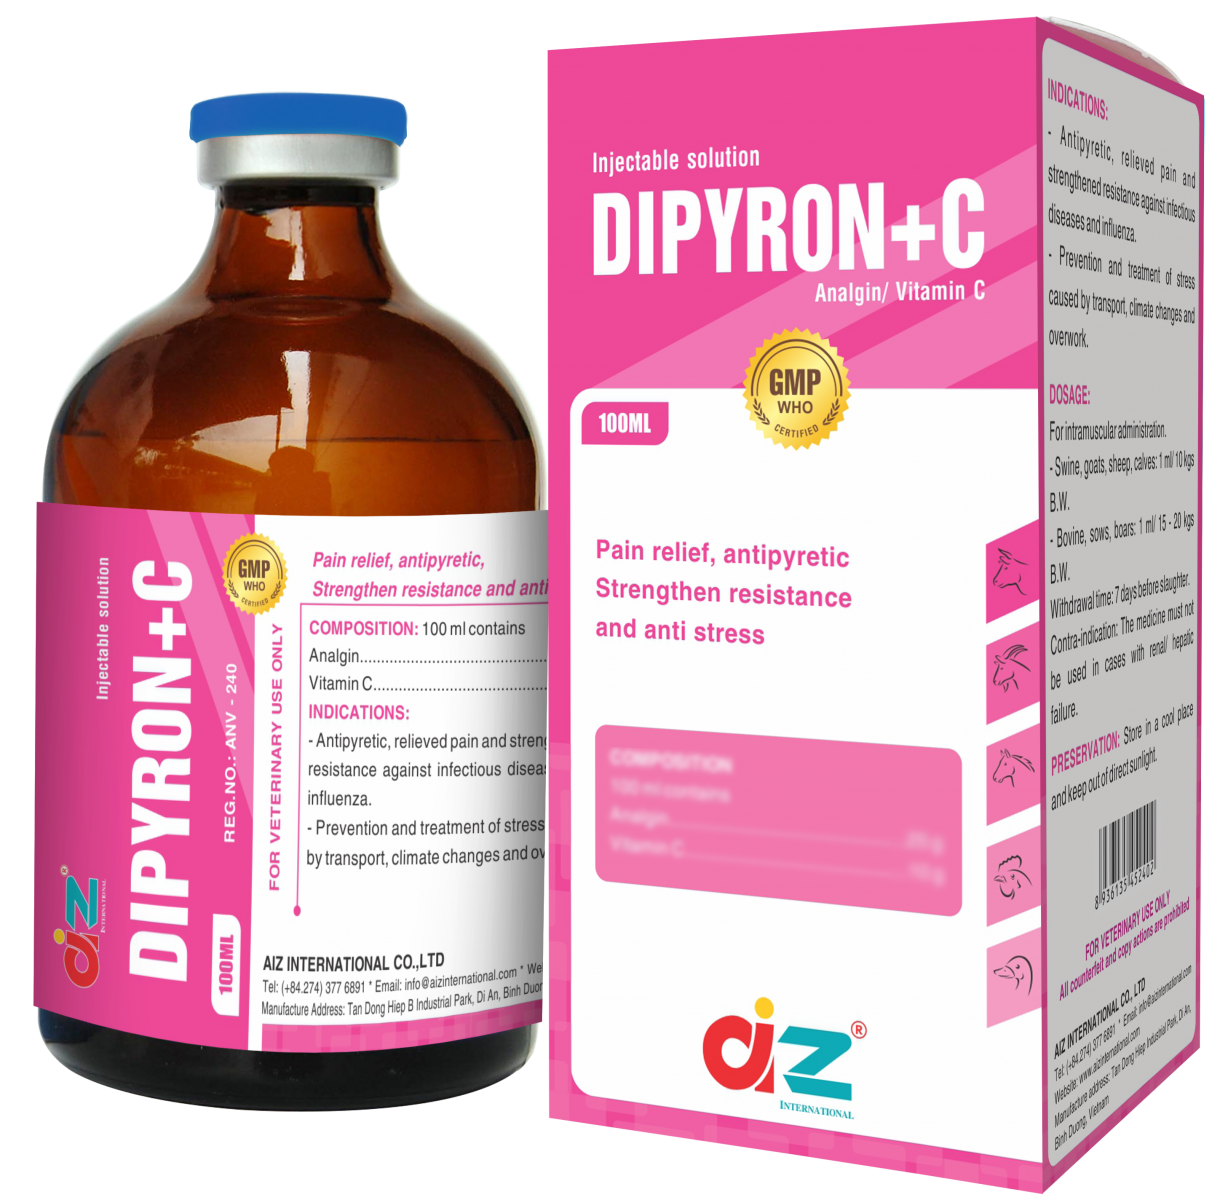 DIPYRON + C